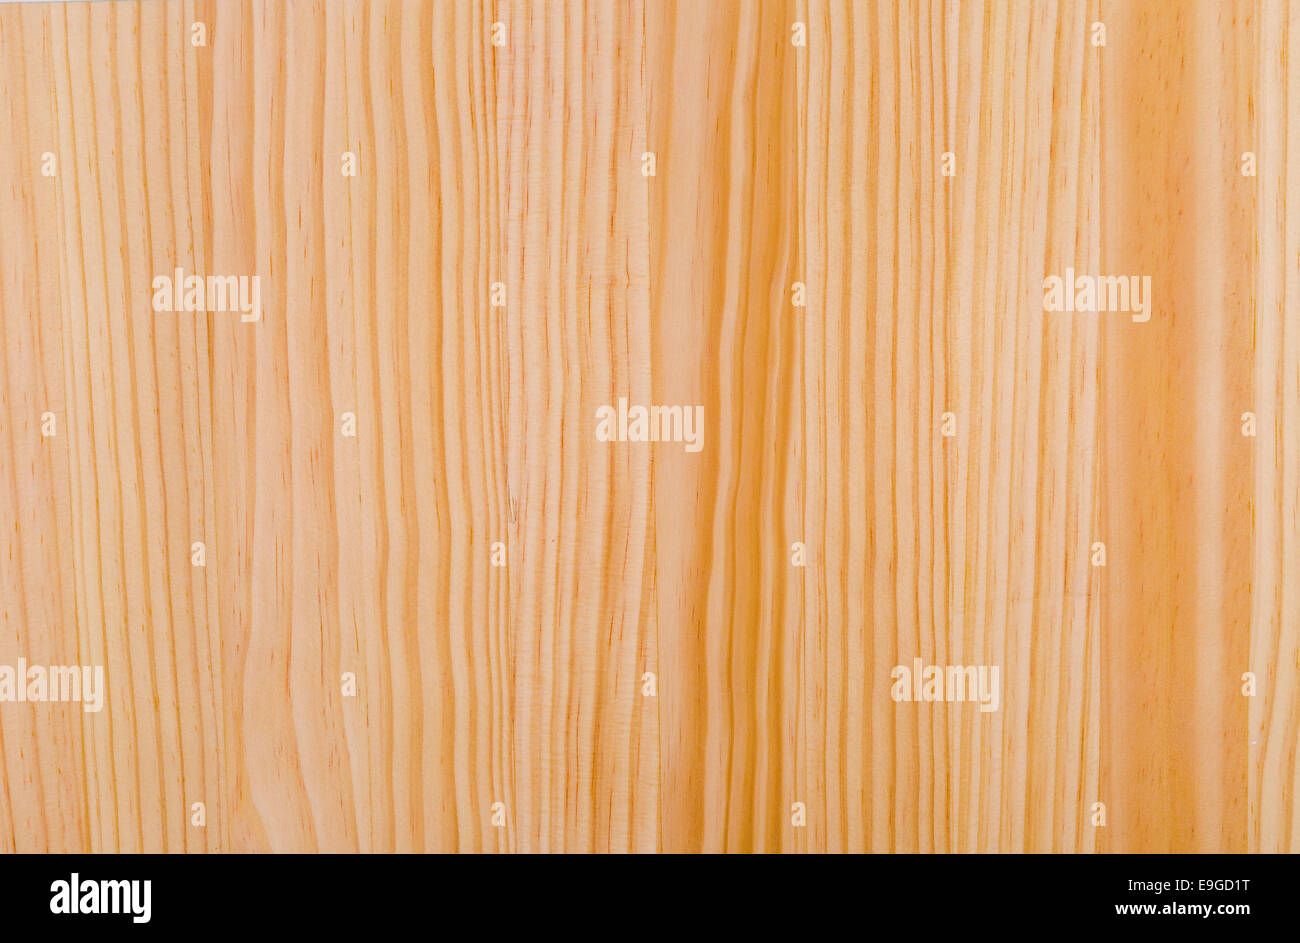 Textura de madera natural de pino como fondo Foto de stock